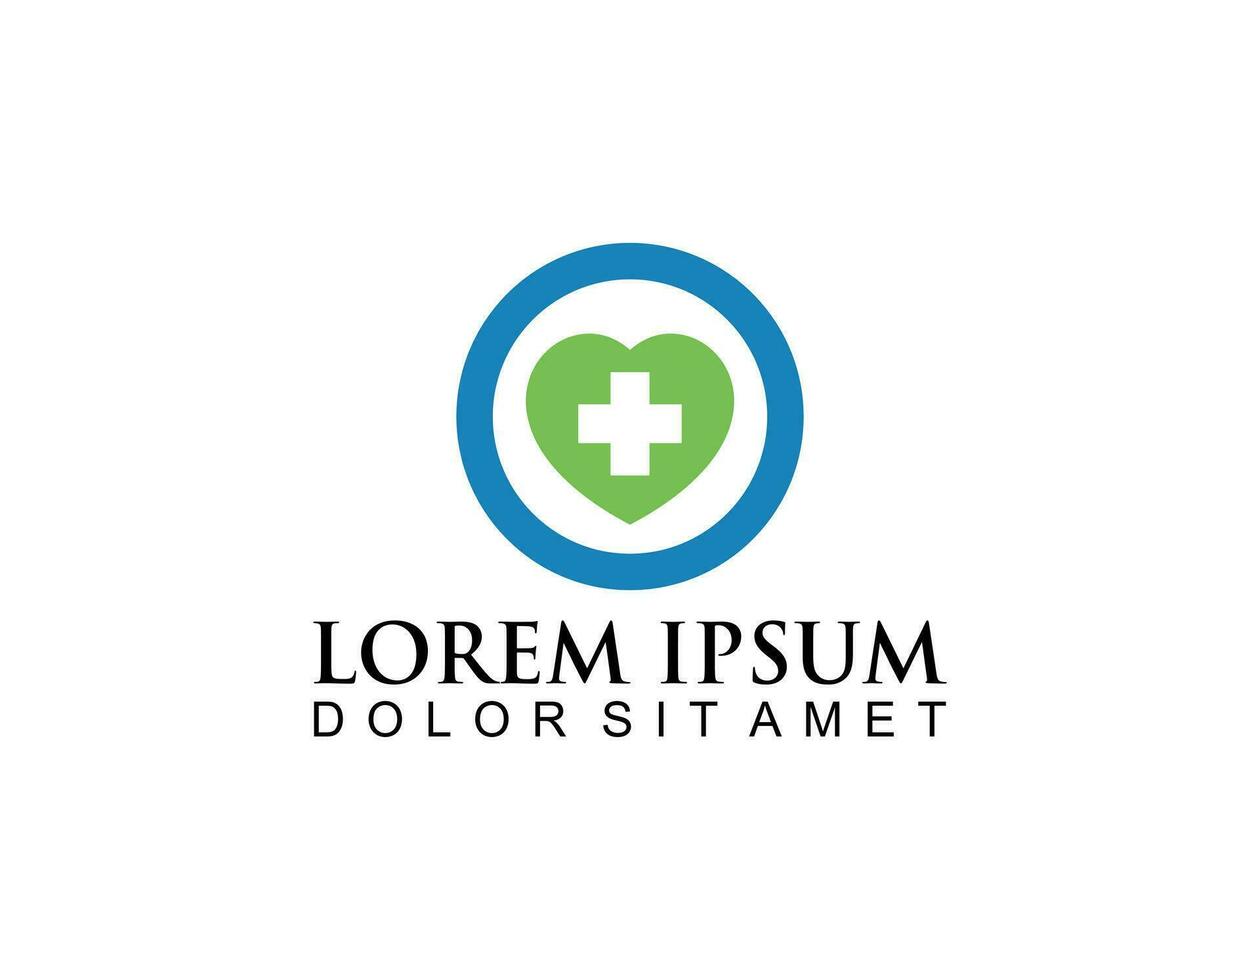 moderno saúde Cuidado o negócio logotipo ícone para hospital médico clínica farmacia Cruz símbolo Projeto elemento com azul e verde coração vetor